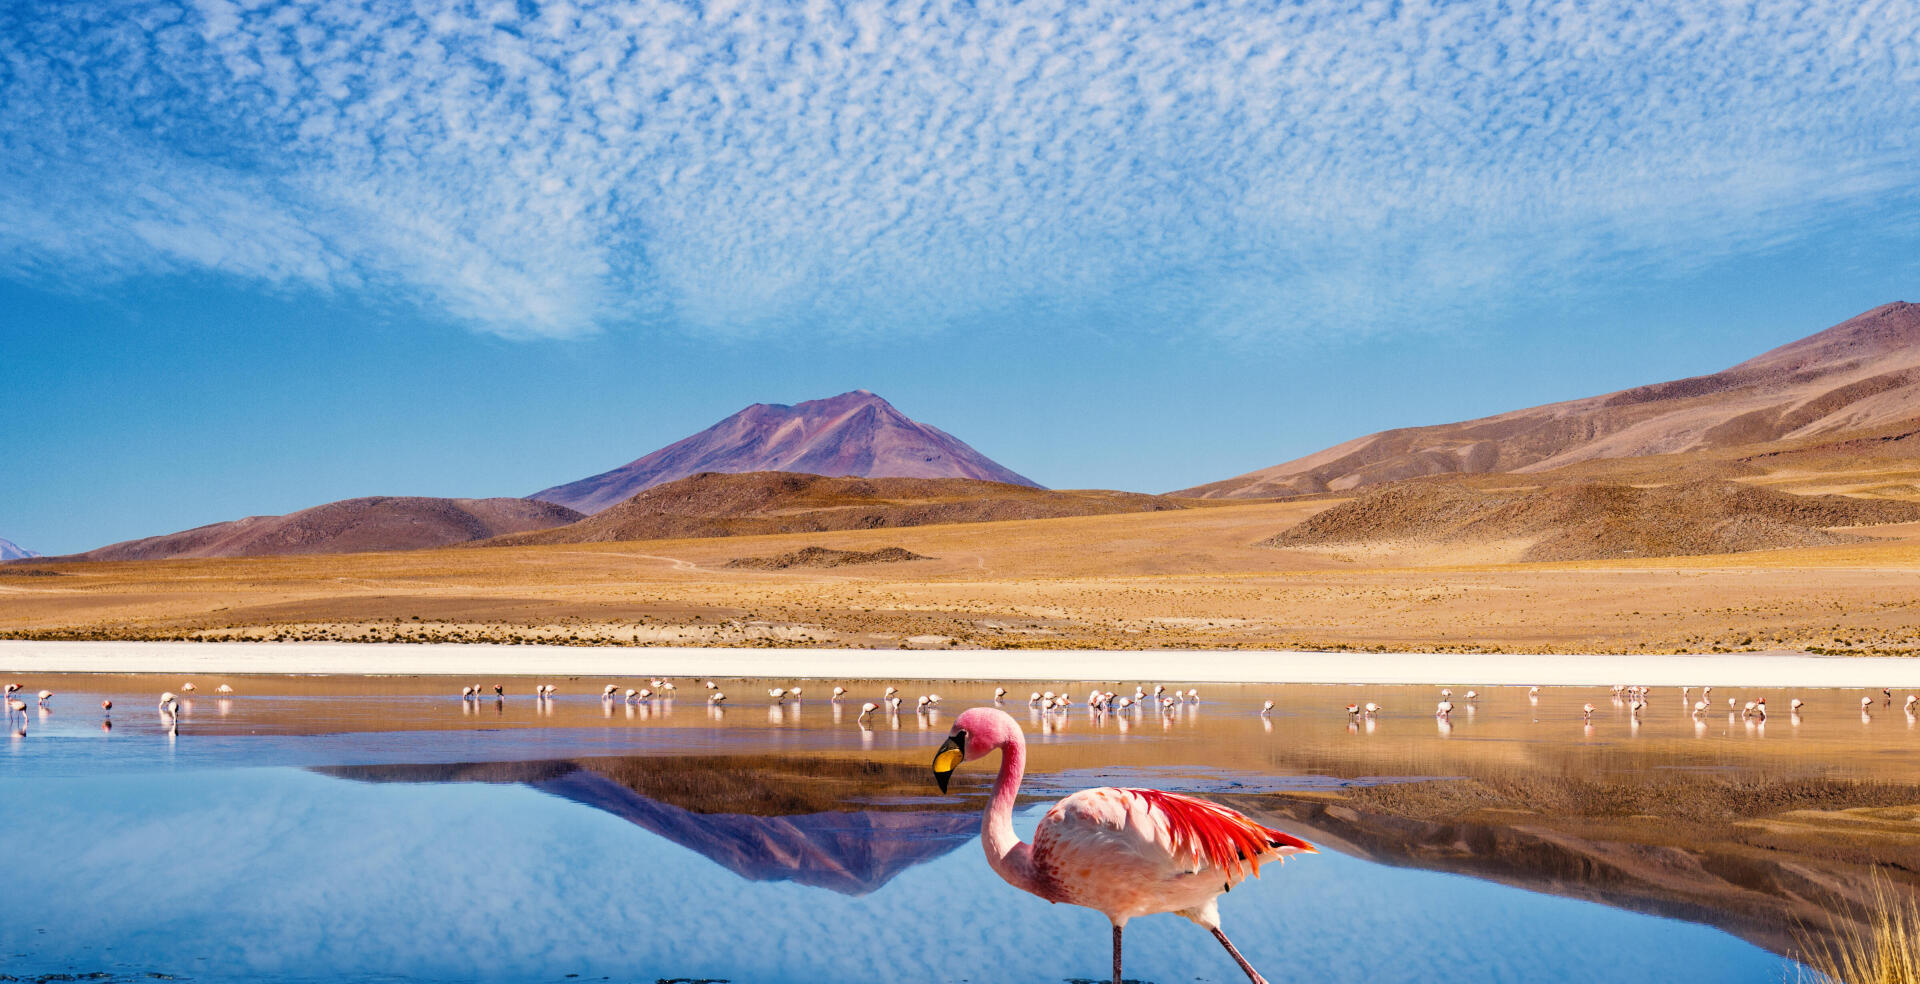 Inspiration : 5 idées de trek en Bolivie